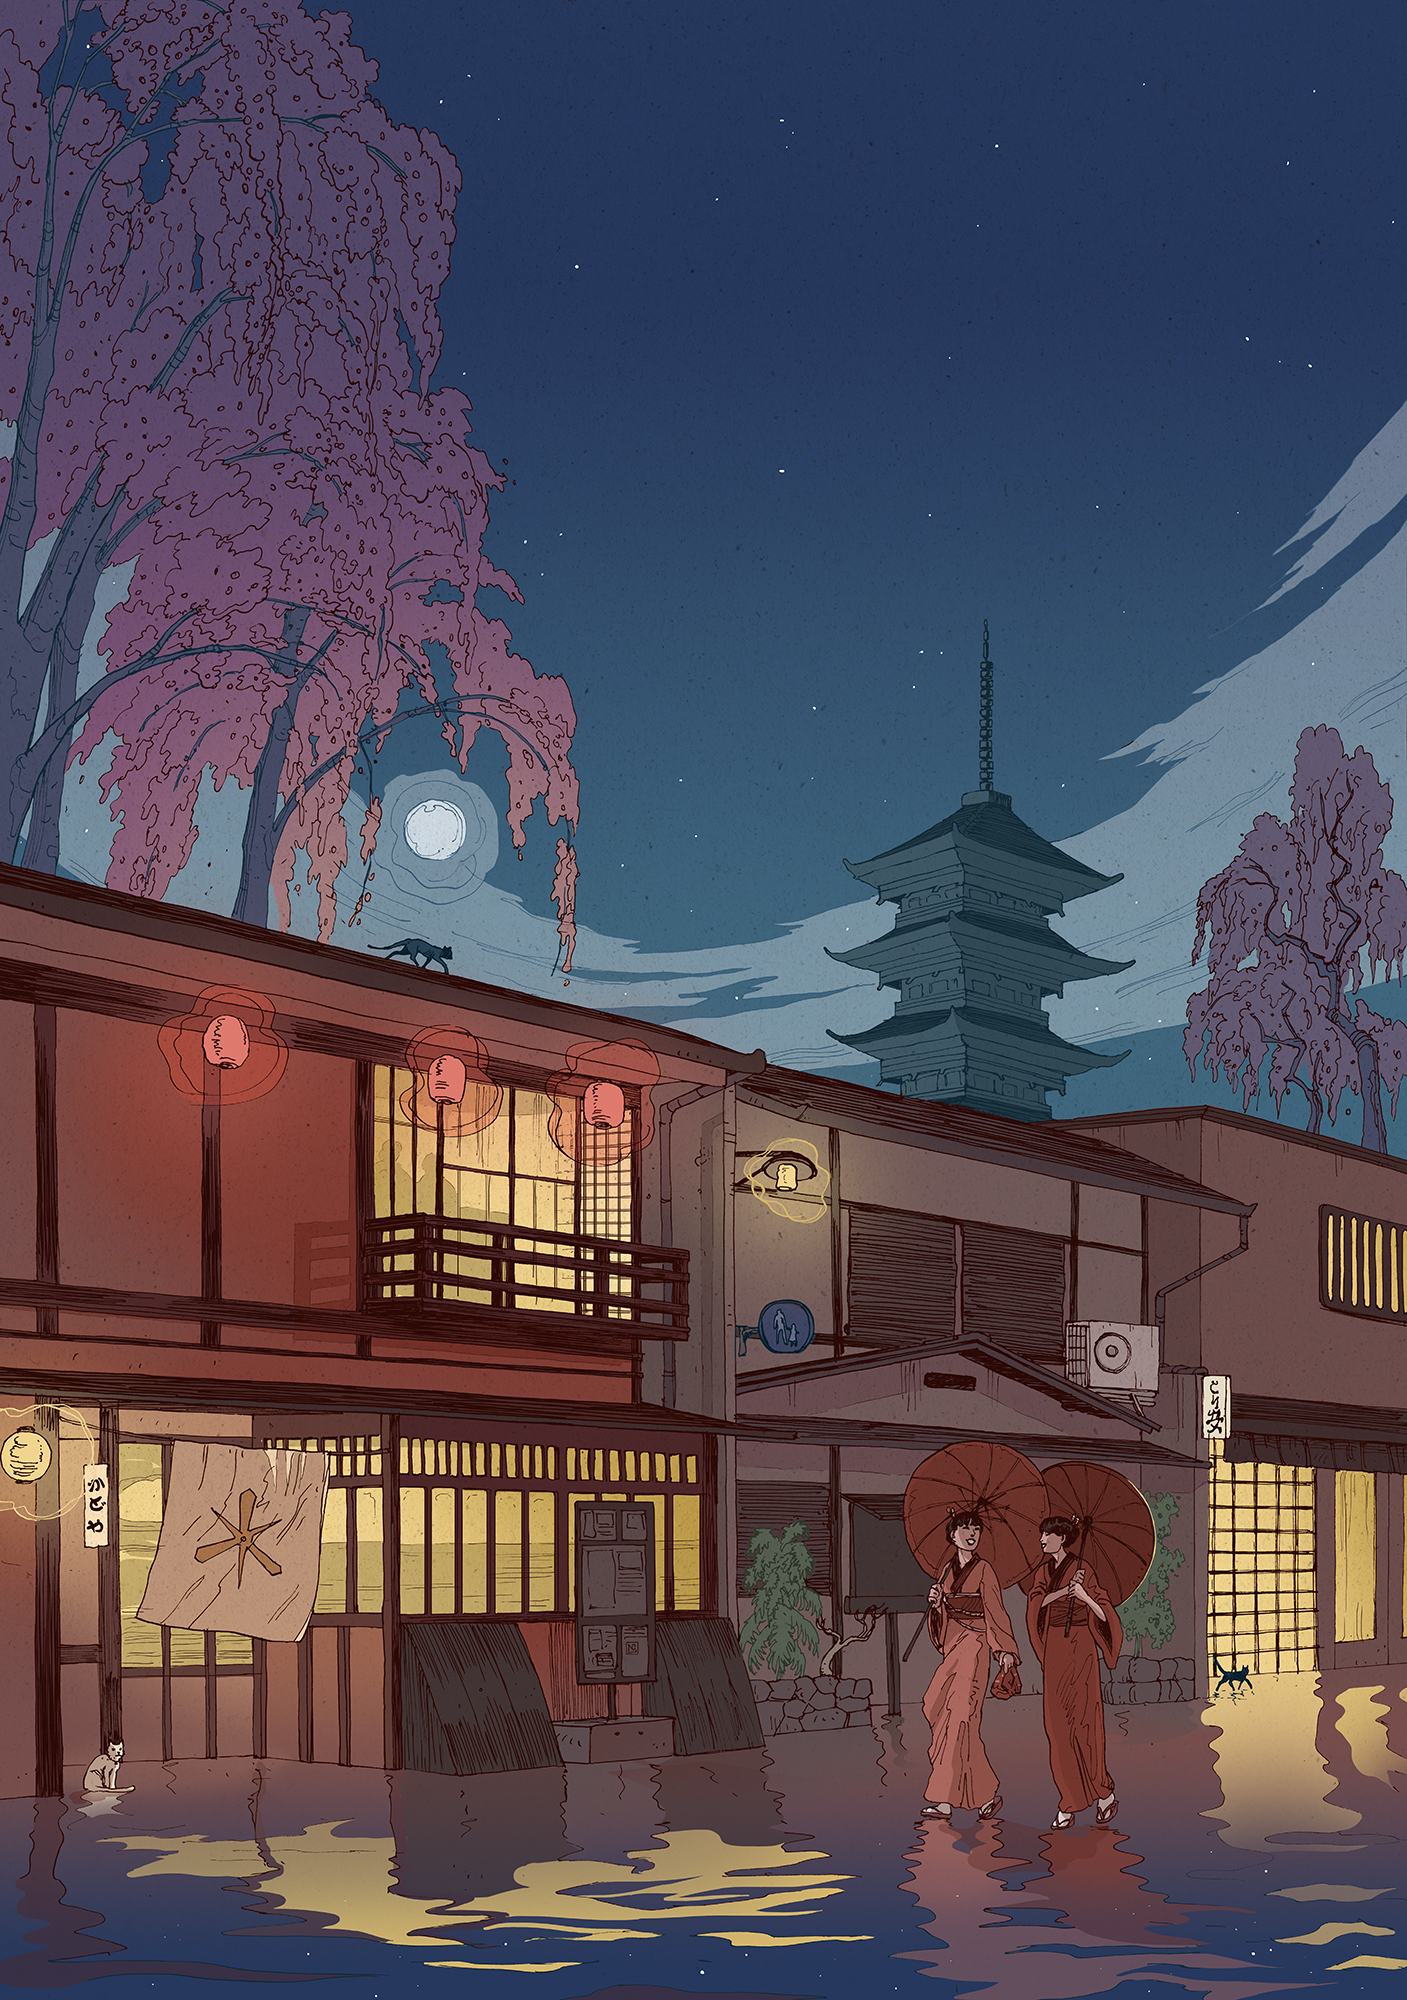 Kyoto at night illustration nicolas castell